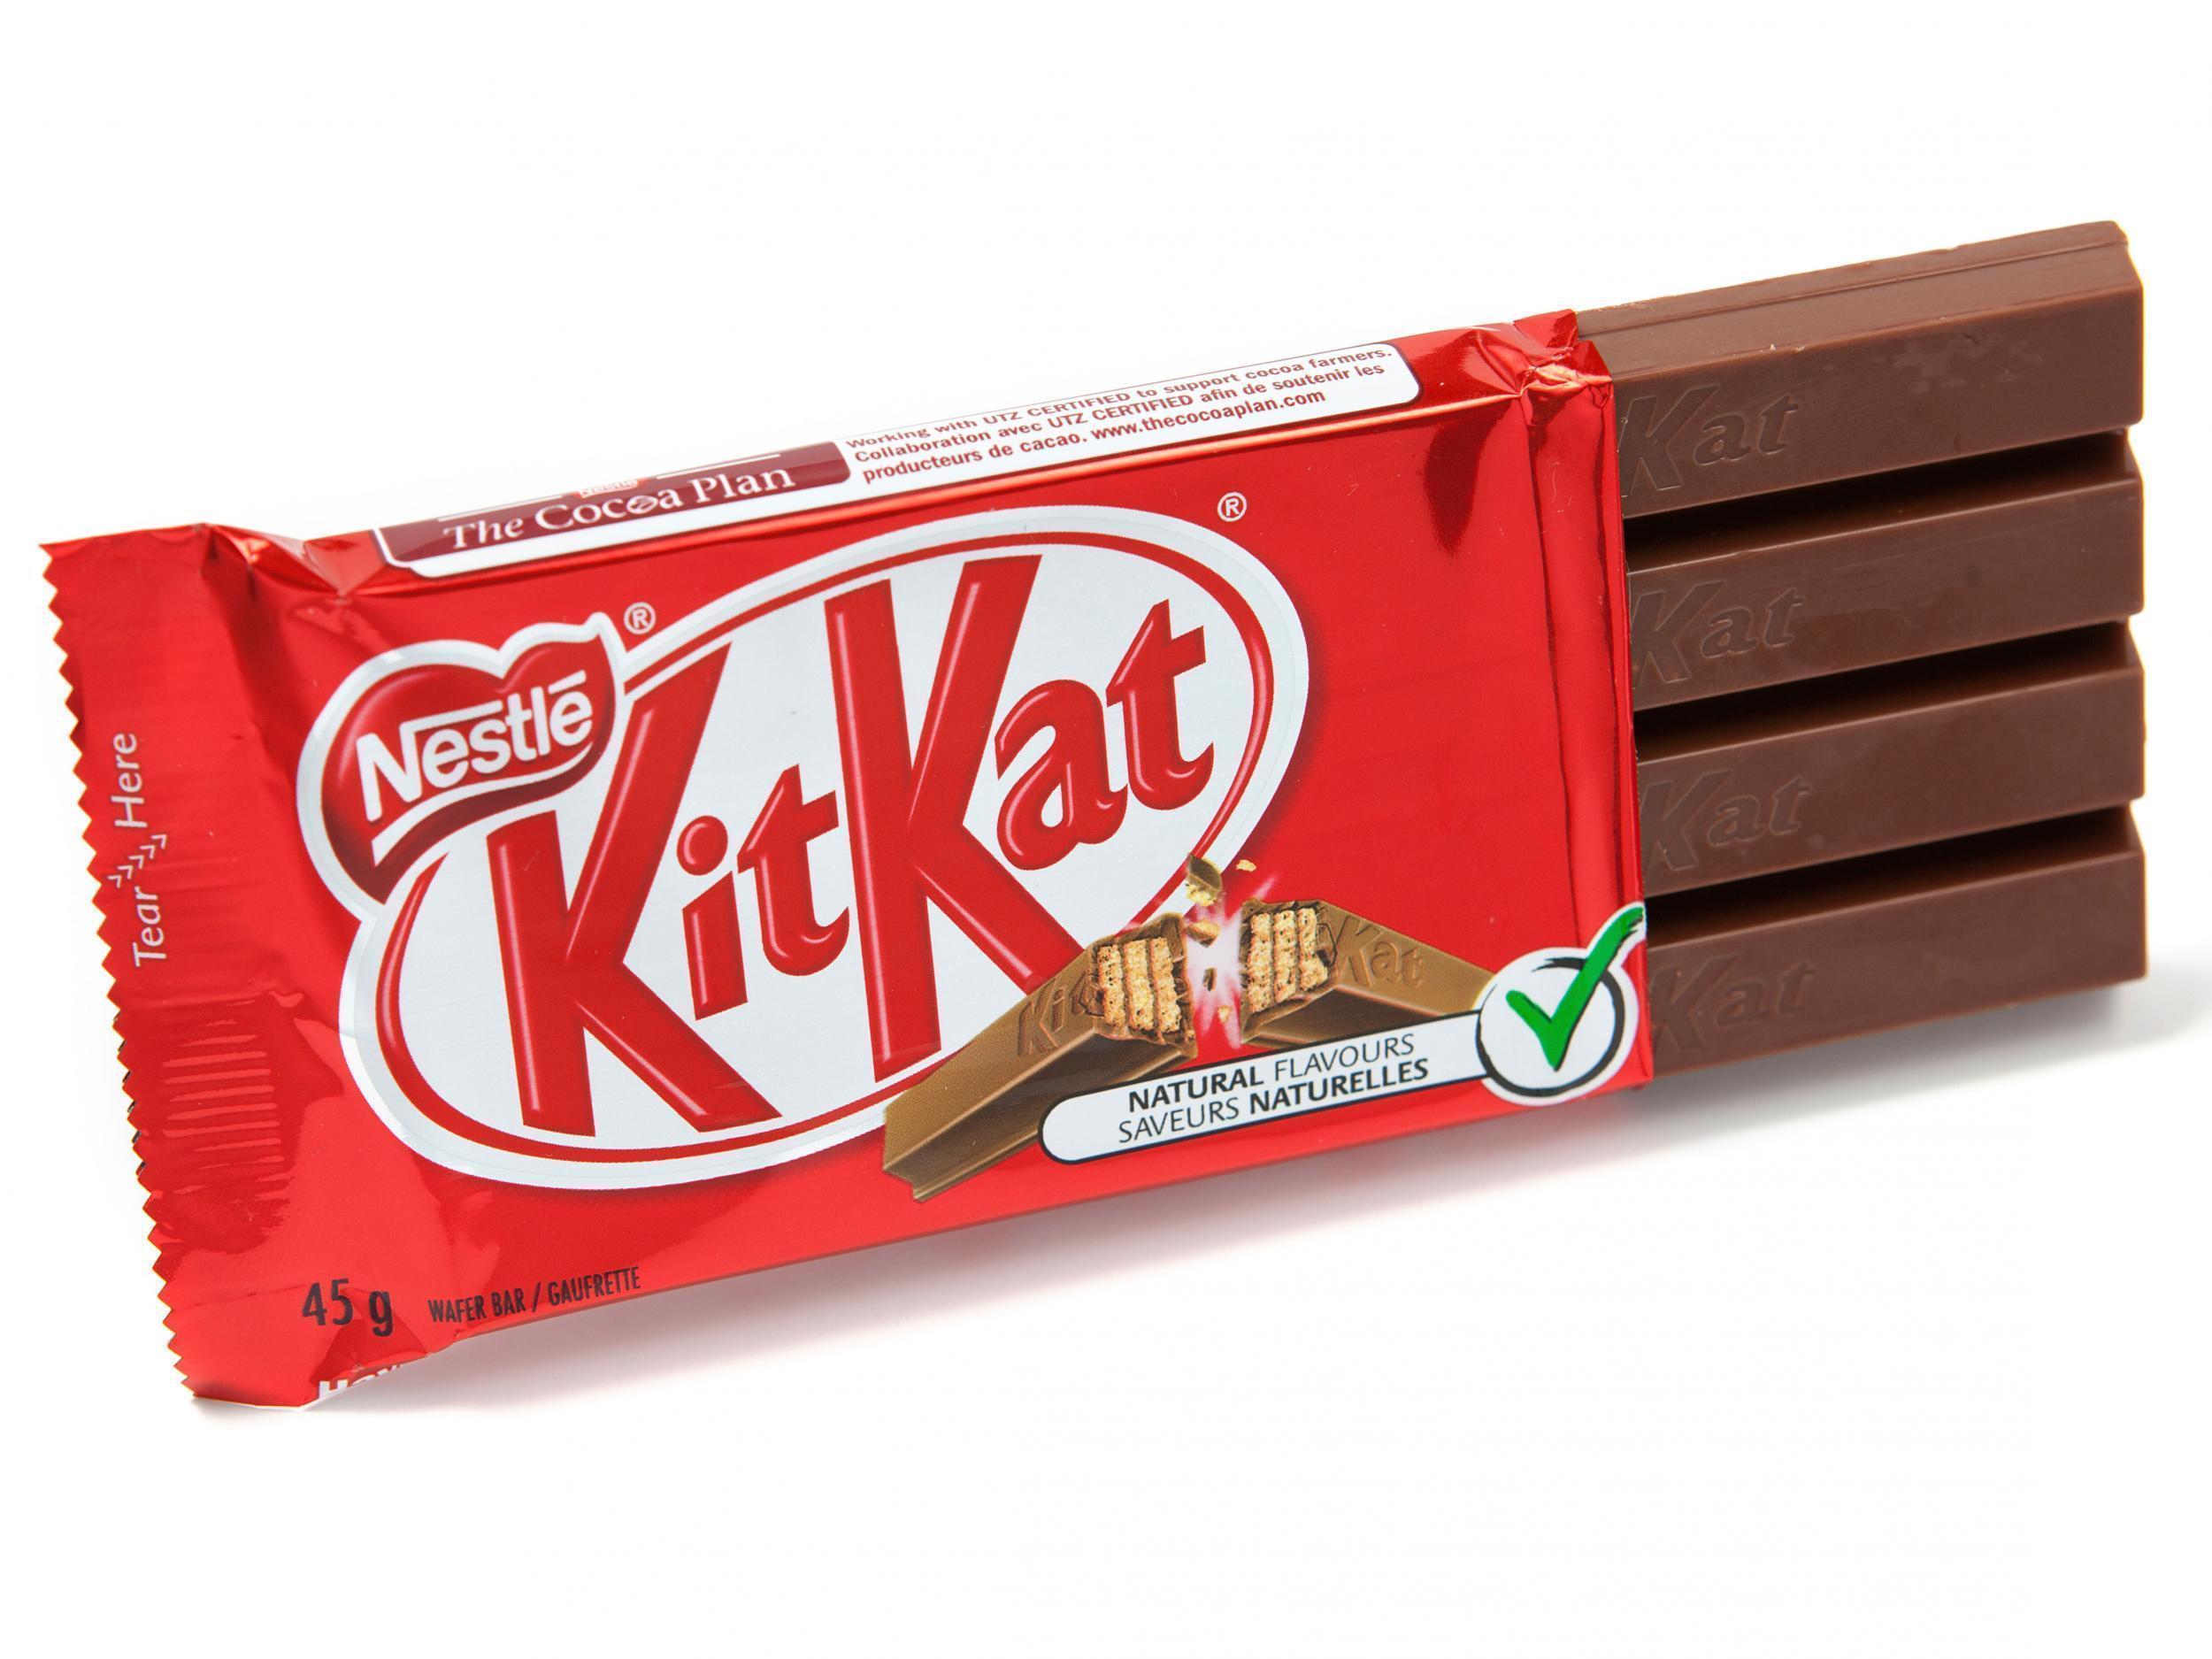 KitKat-Four-finger.jpg